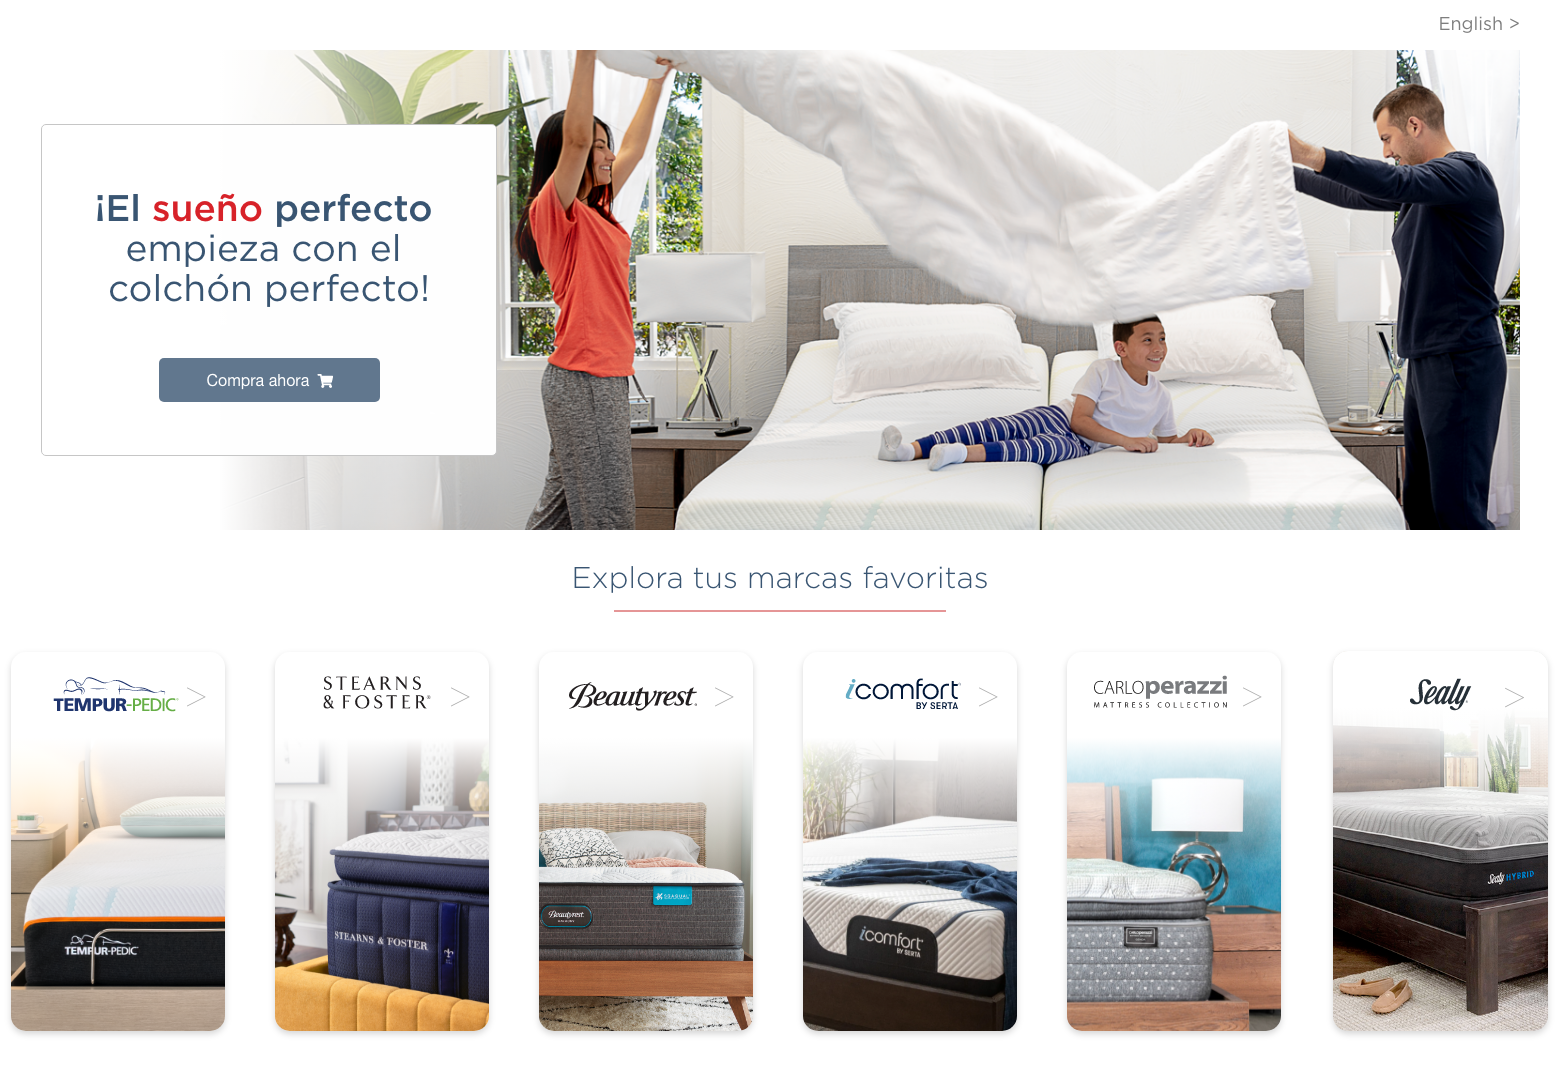 ¡El sueño perfecto empieza con el colchón perfecto! Explora tus marcas favoritas